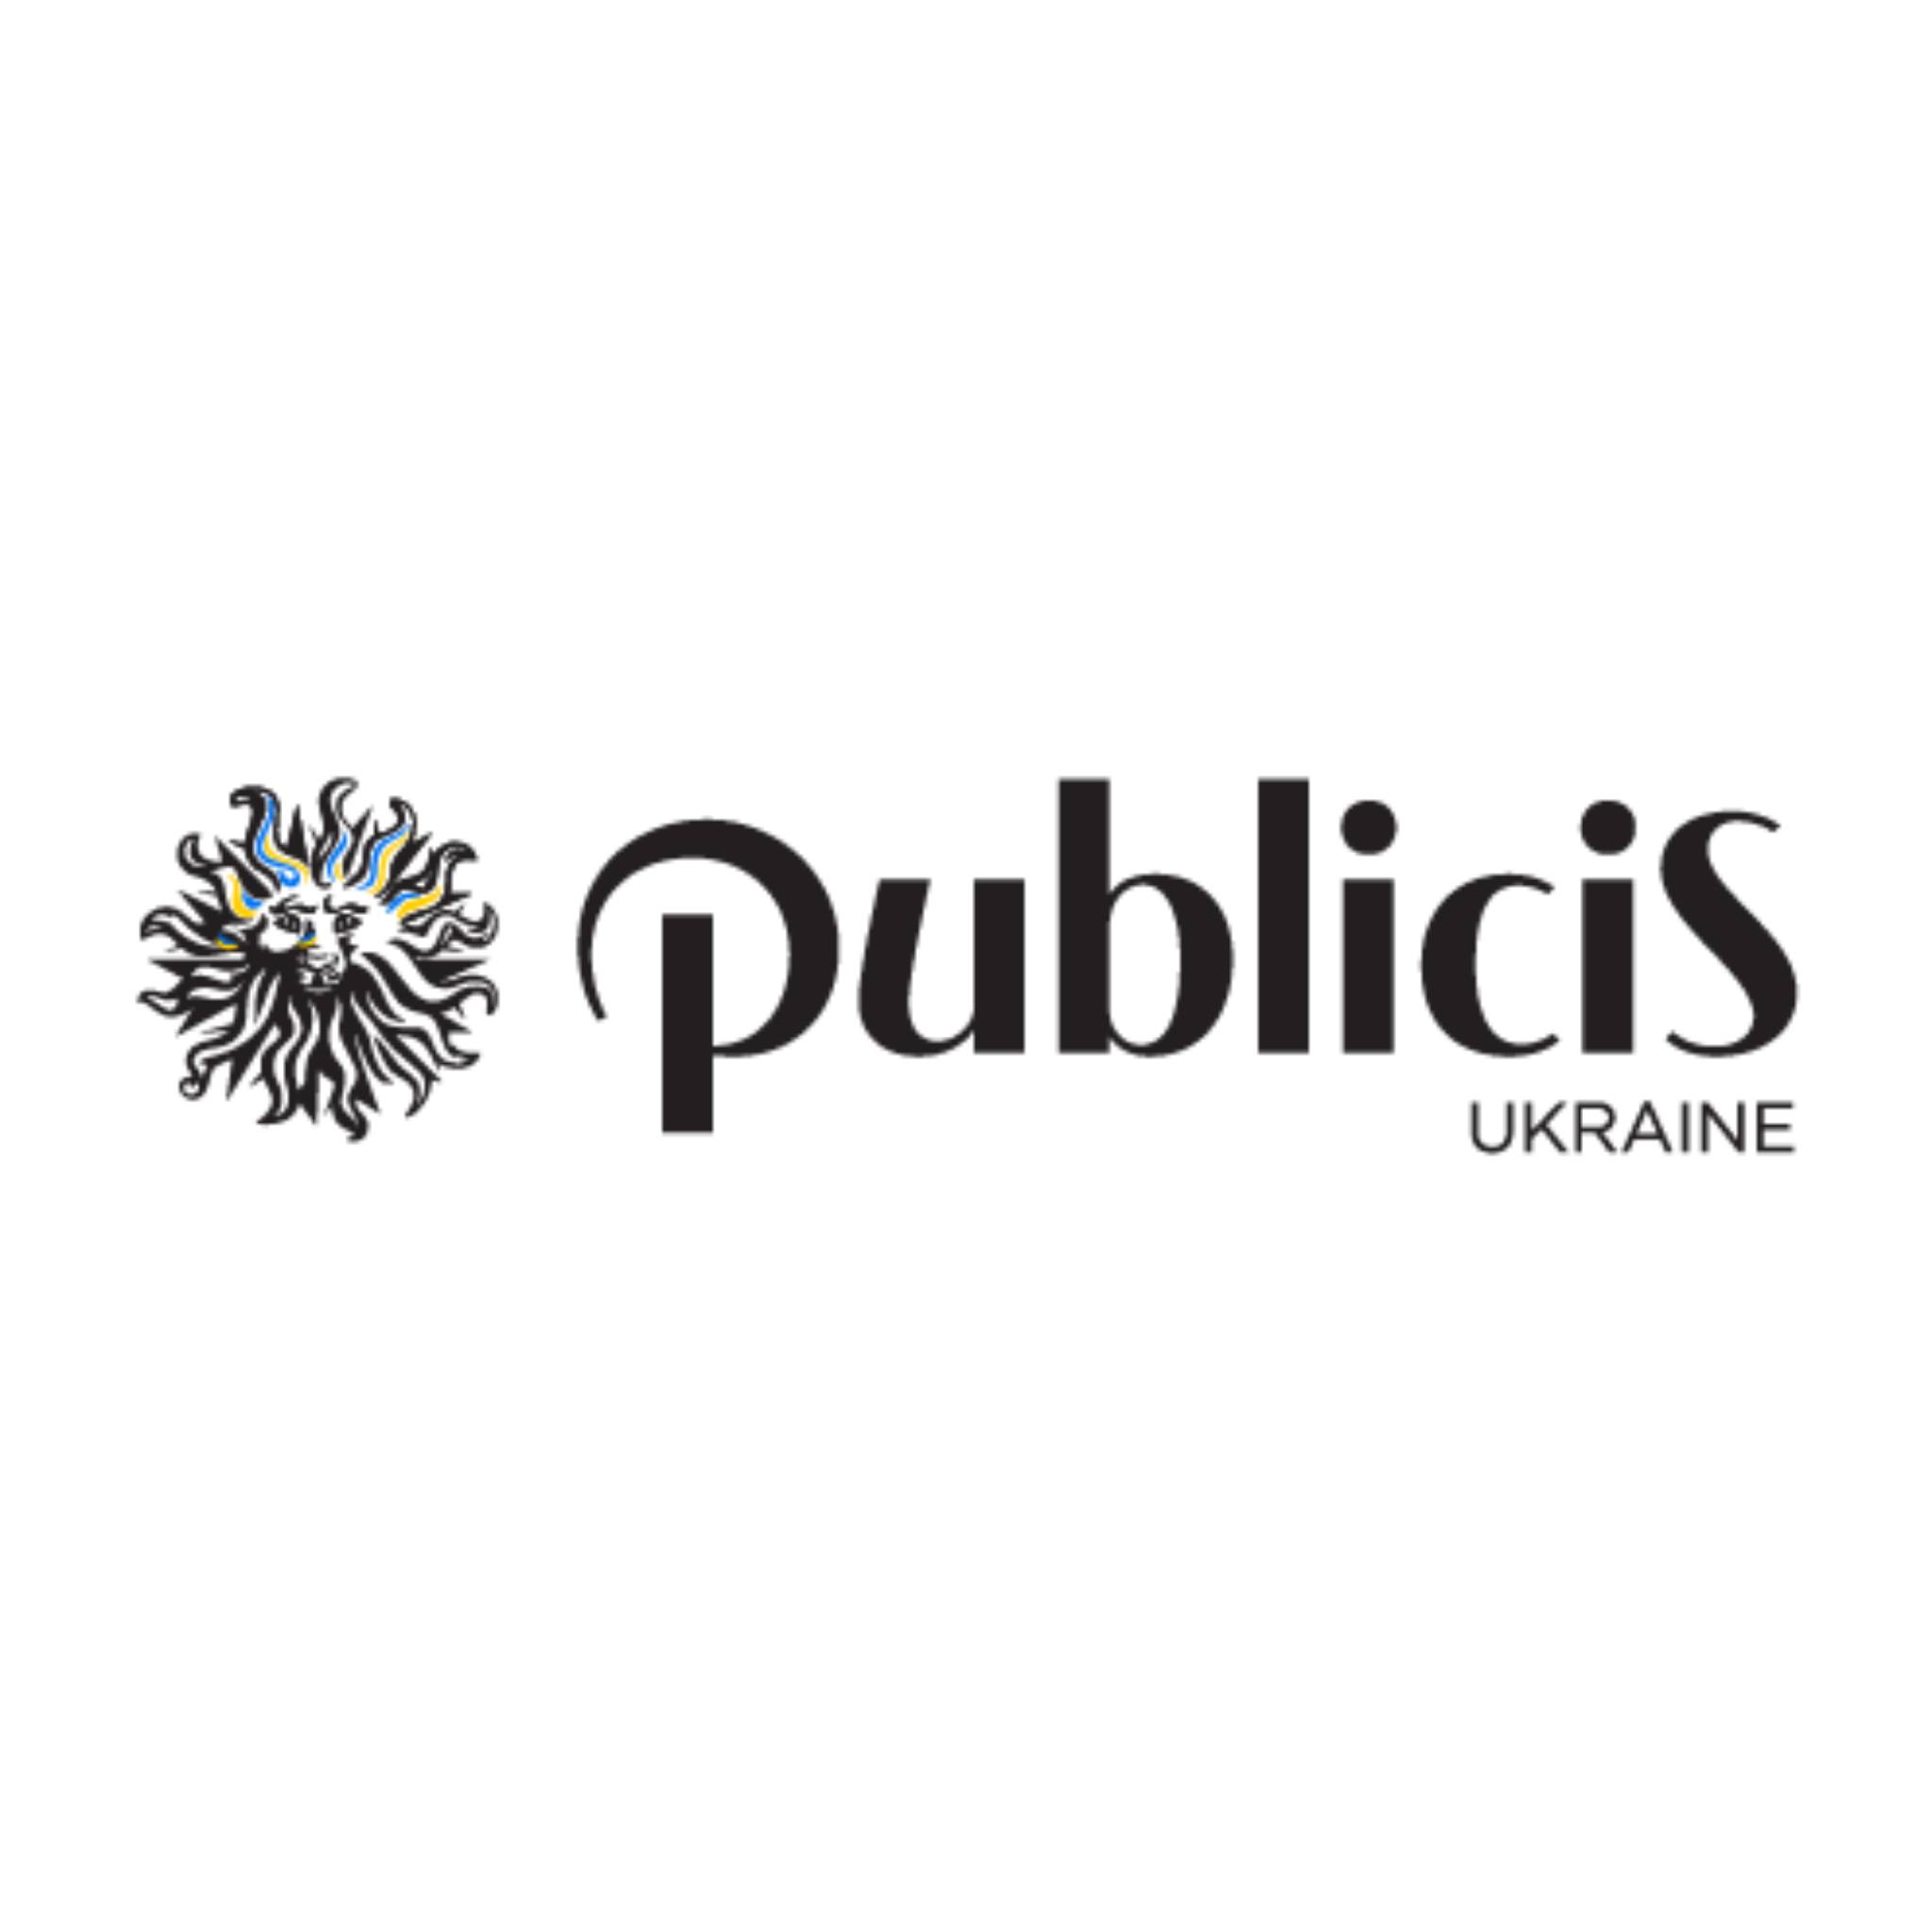 Publicis Ukraine